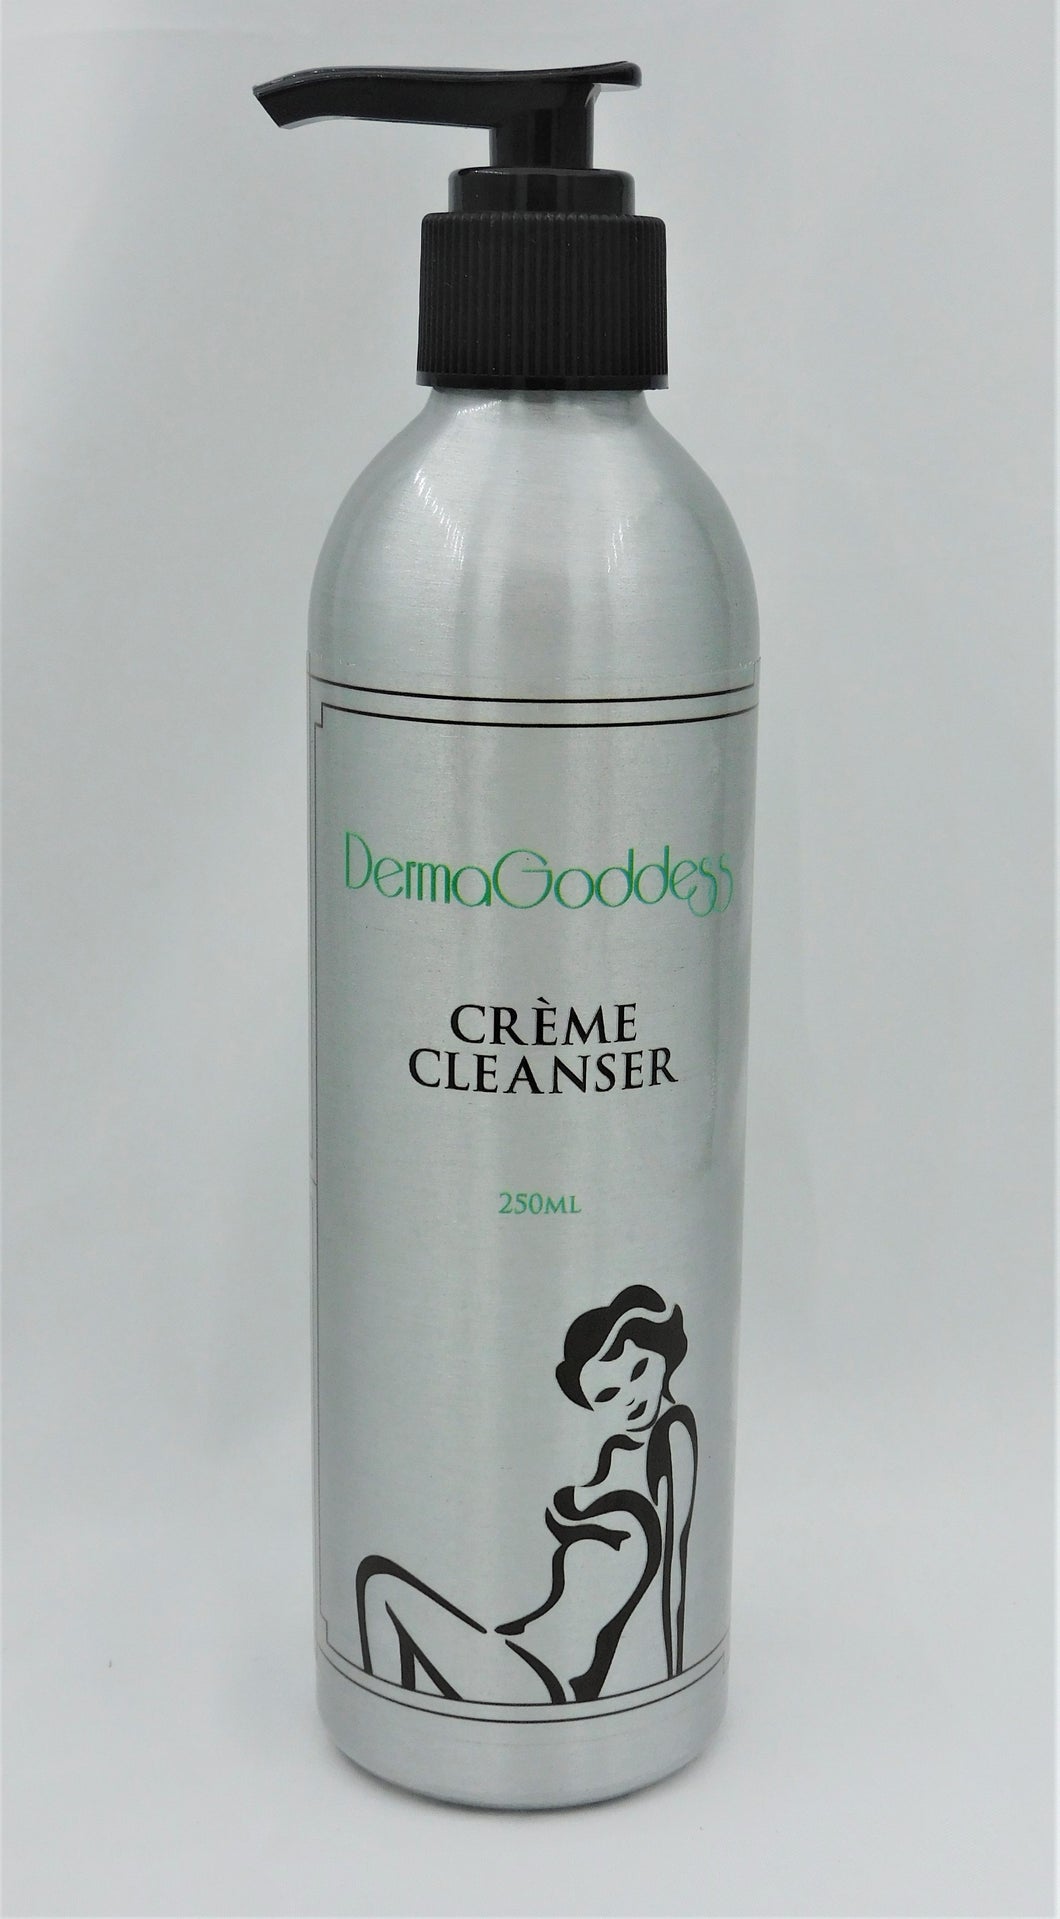 DermaGoddess Crème Cleanser